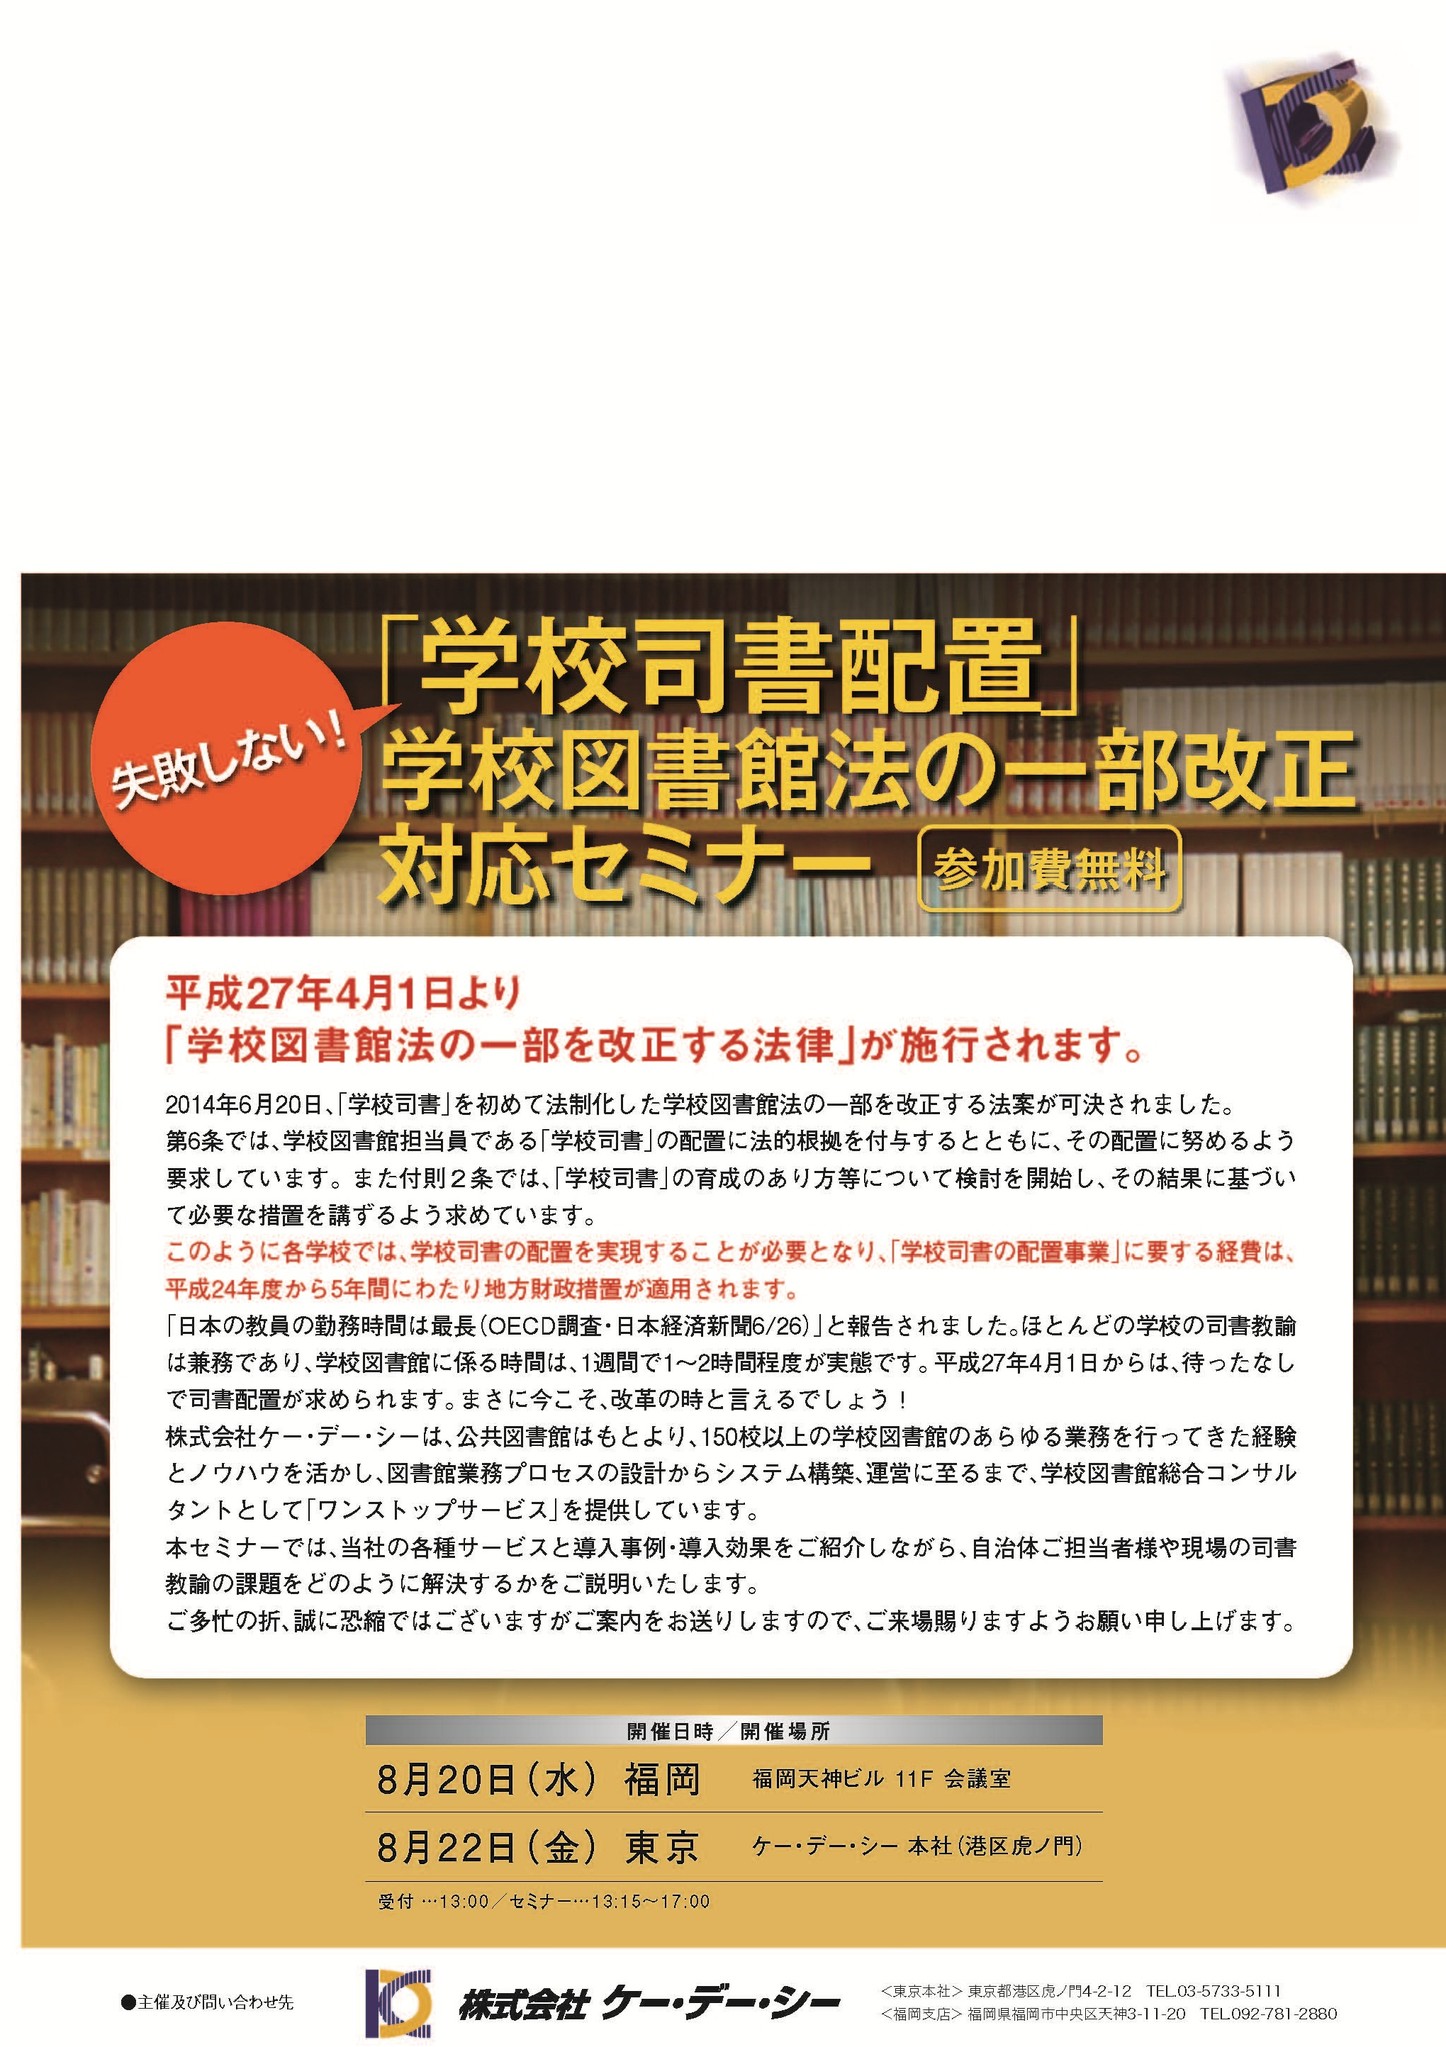 学校図書館法一部改正 学校司書配置の法制化対応 無料セミナー開催 株式会社ケー デー シーのプレスリリース